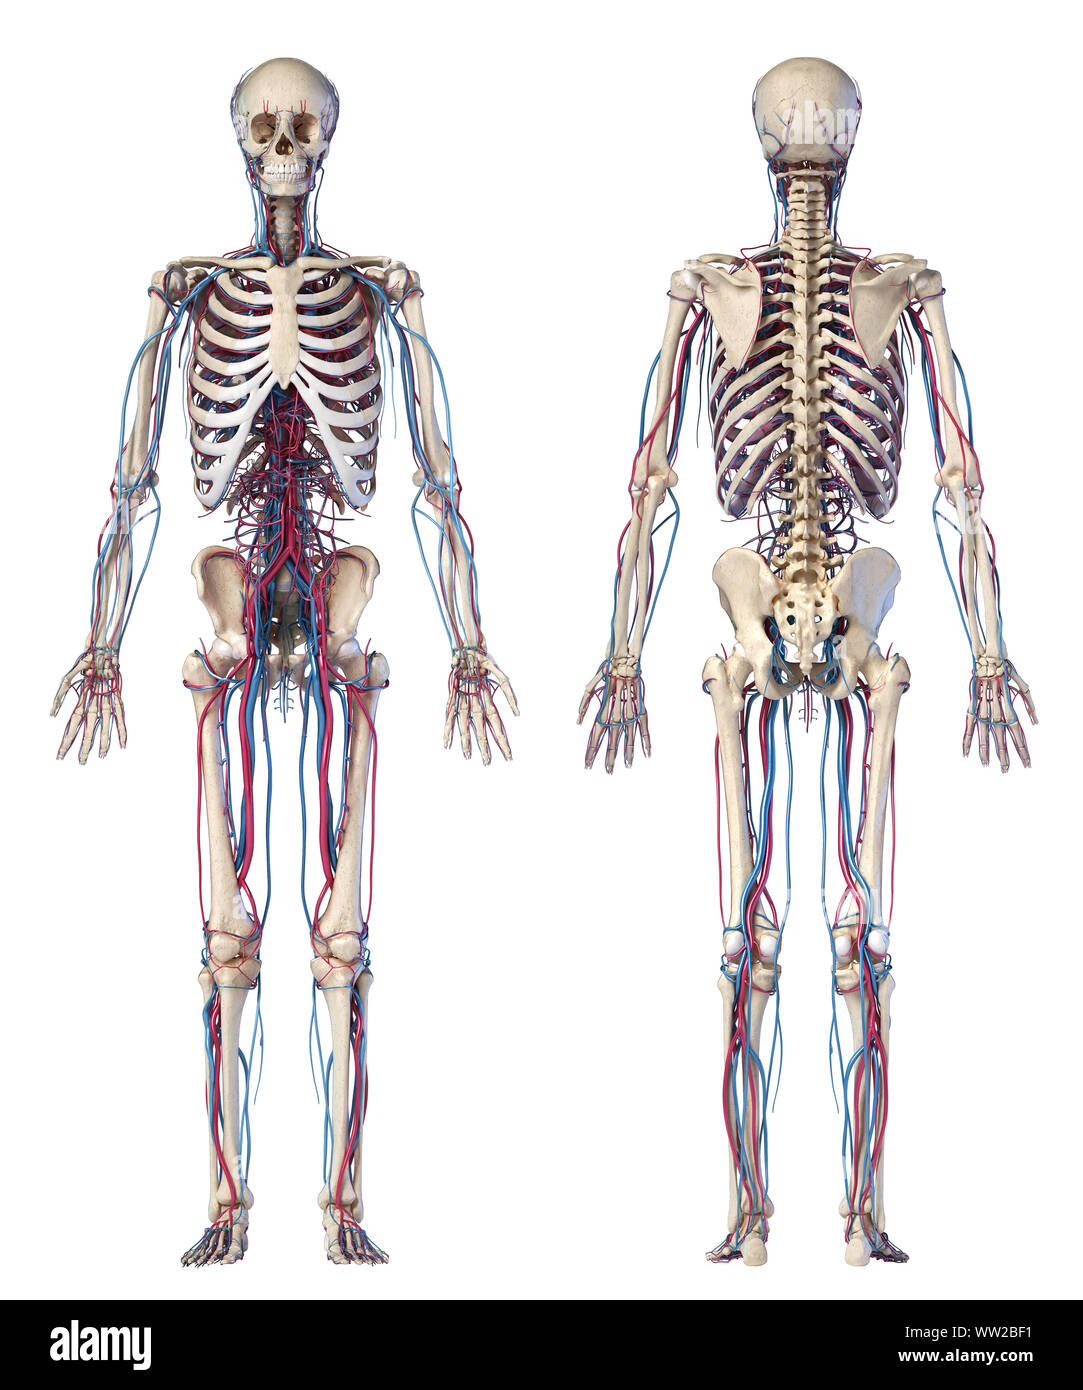 L'anatomie du corps humain. 3d illustration des complications osseuses et cardiovasculaire. Vues avant et arrière. Sur fond blanc. Banque D'Images